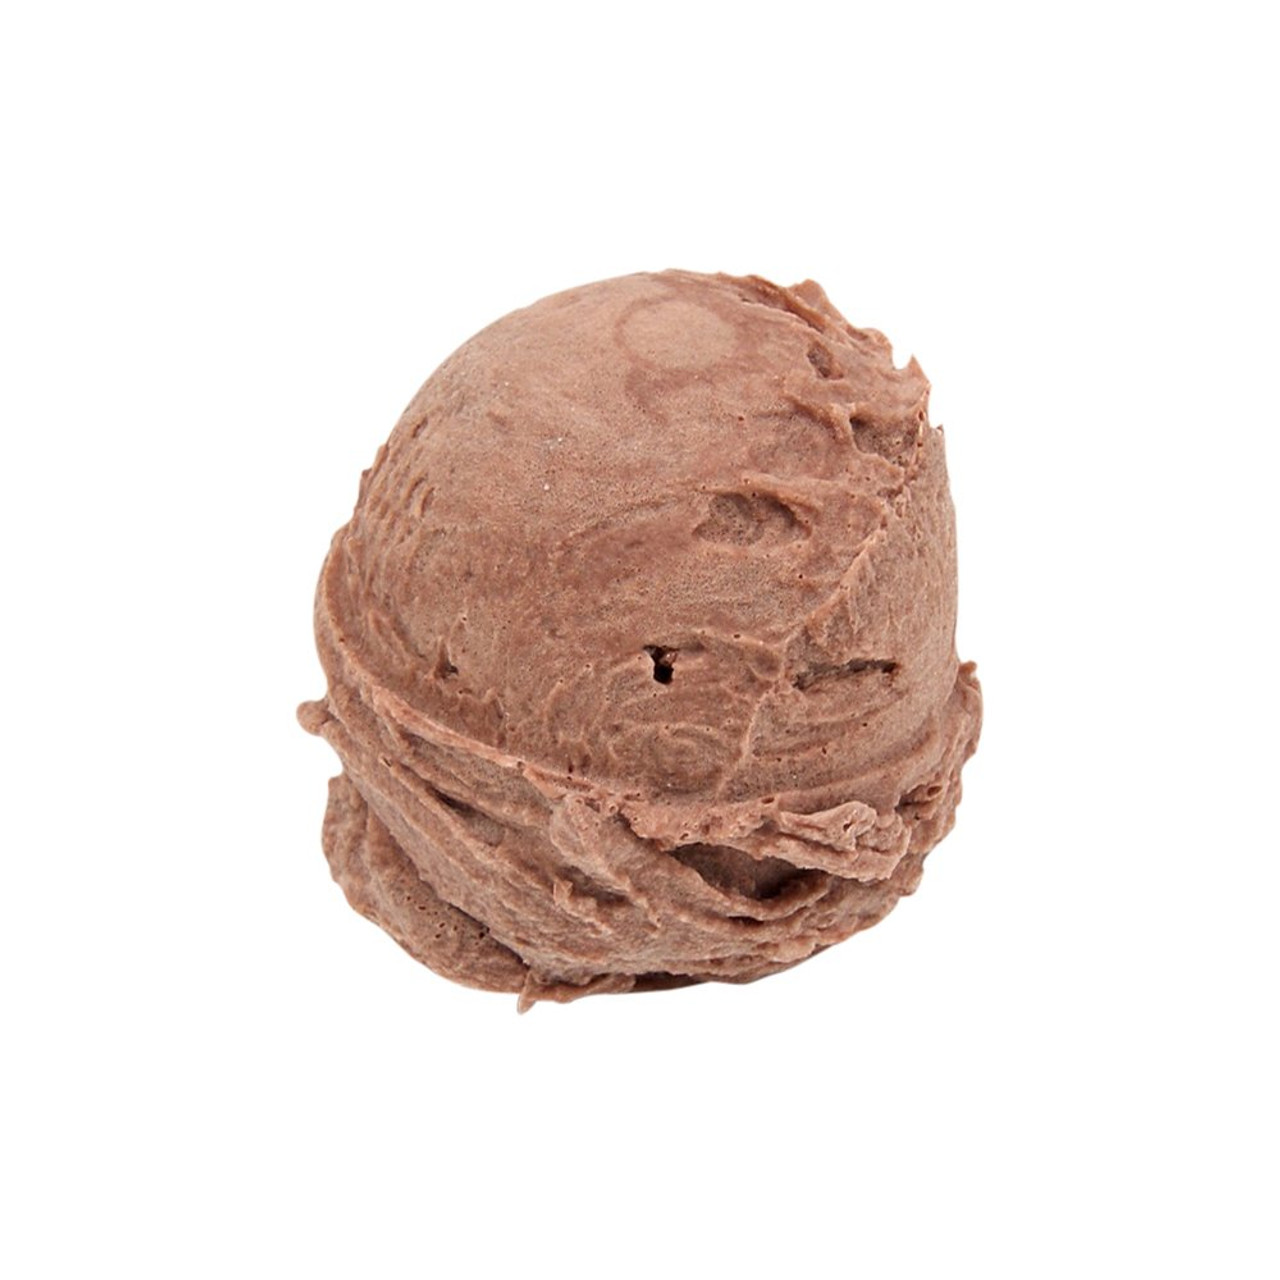 Fake Chocolate Ice Cream Scoop